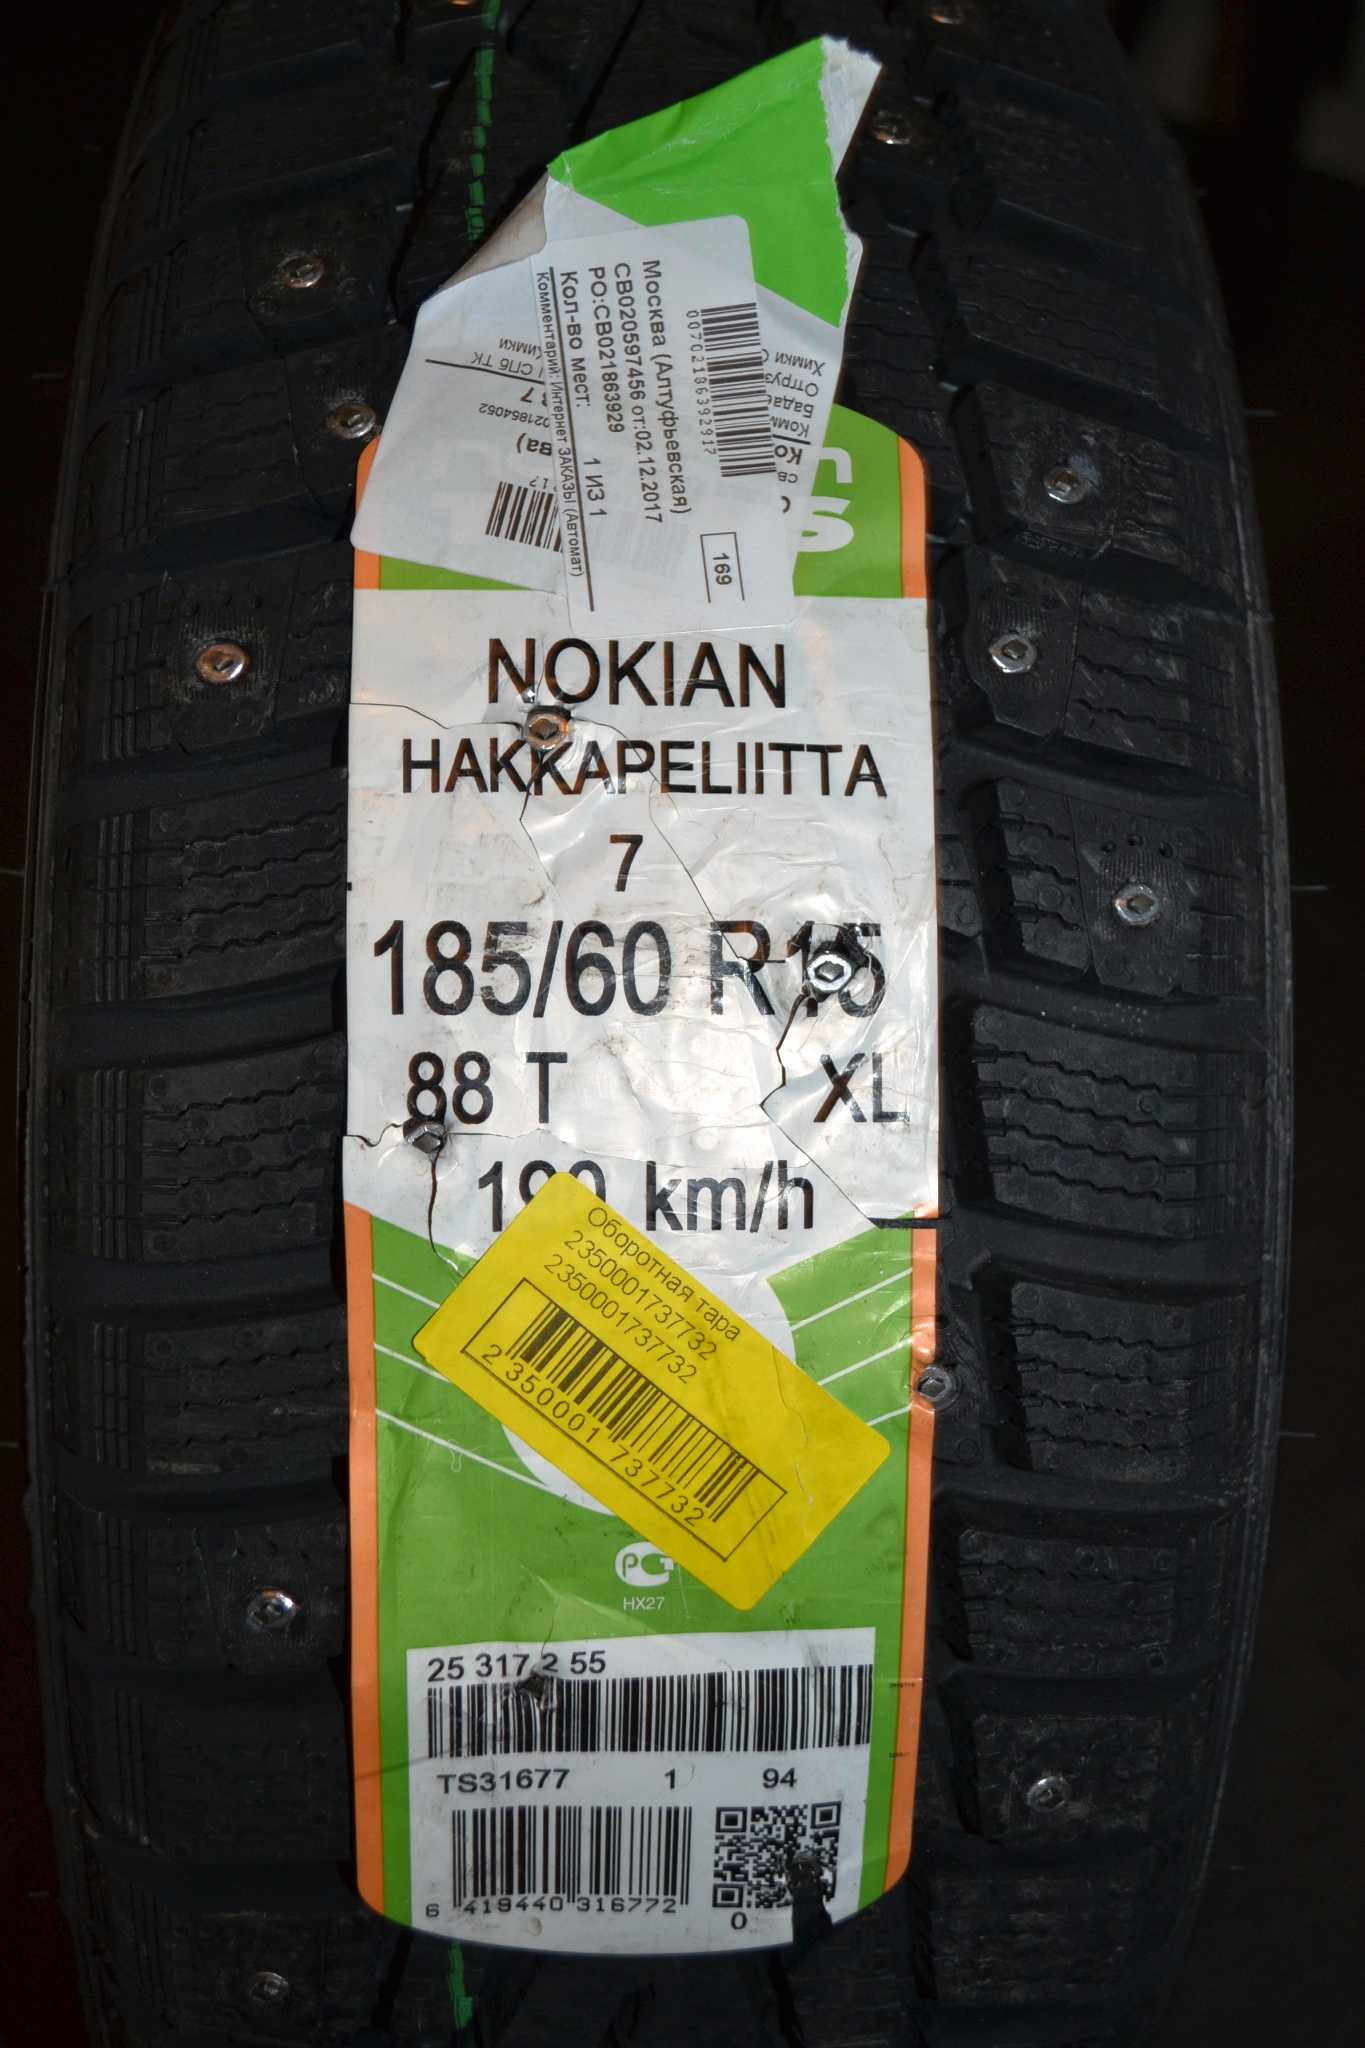 Nokian nordman и nokian hakkapeliitta: что лучше и в чём отличия?